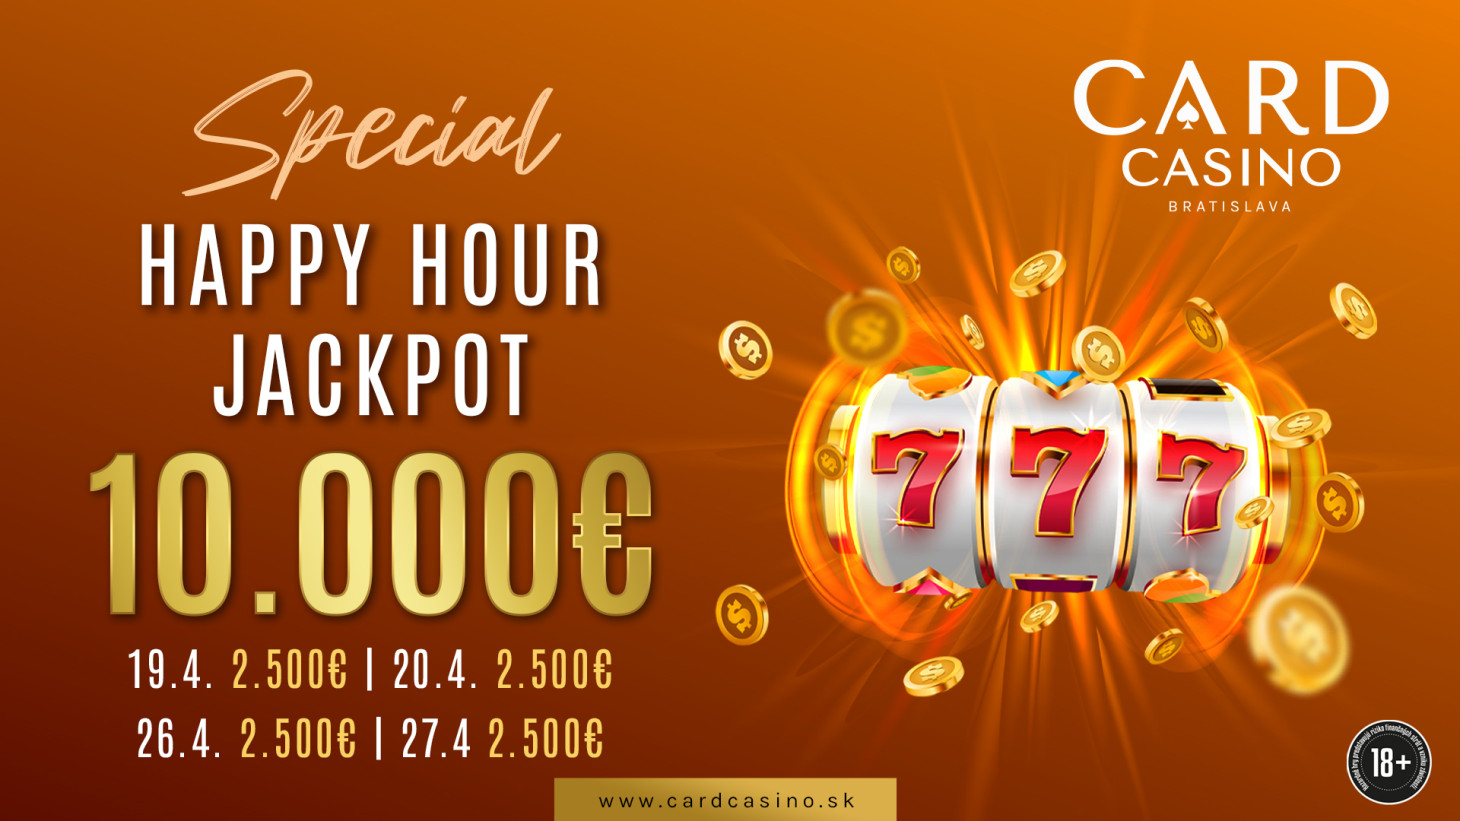 Tage voller Geld. Der Happy Hour Jackpot bietet Preise im Wert von 10.000 €!